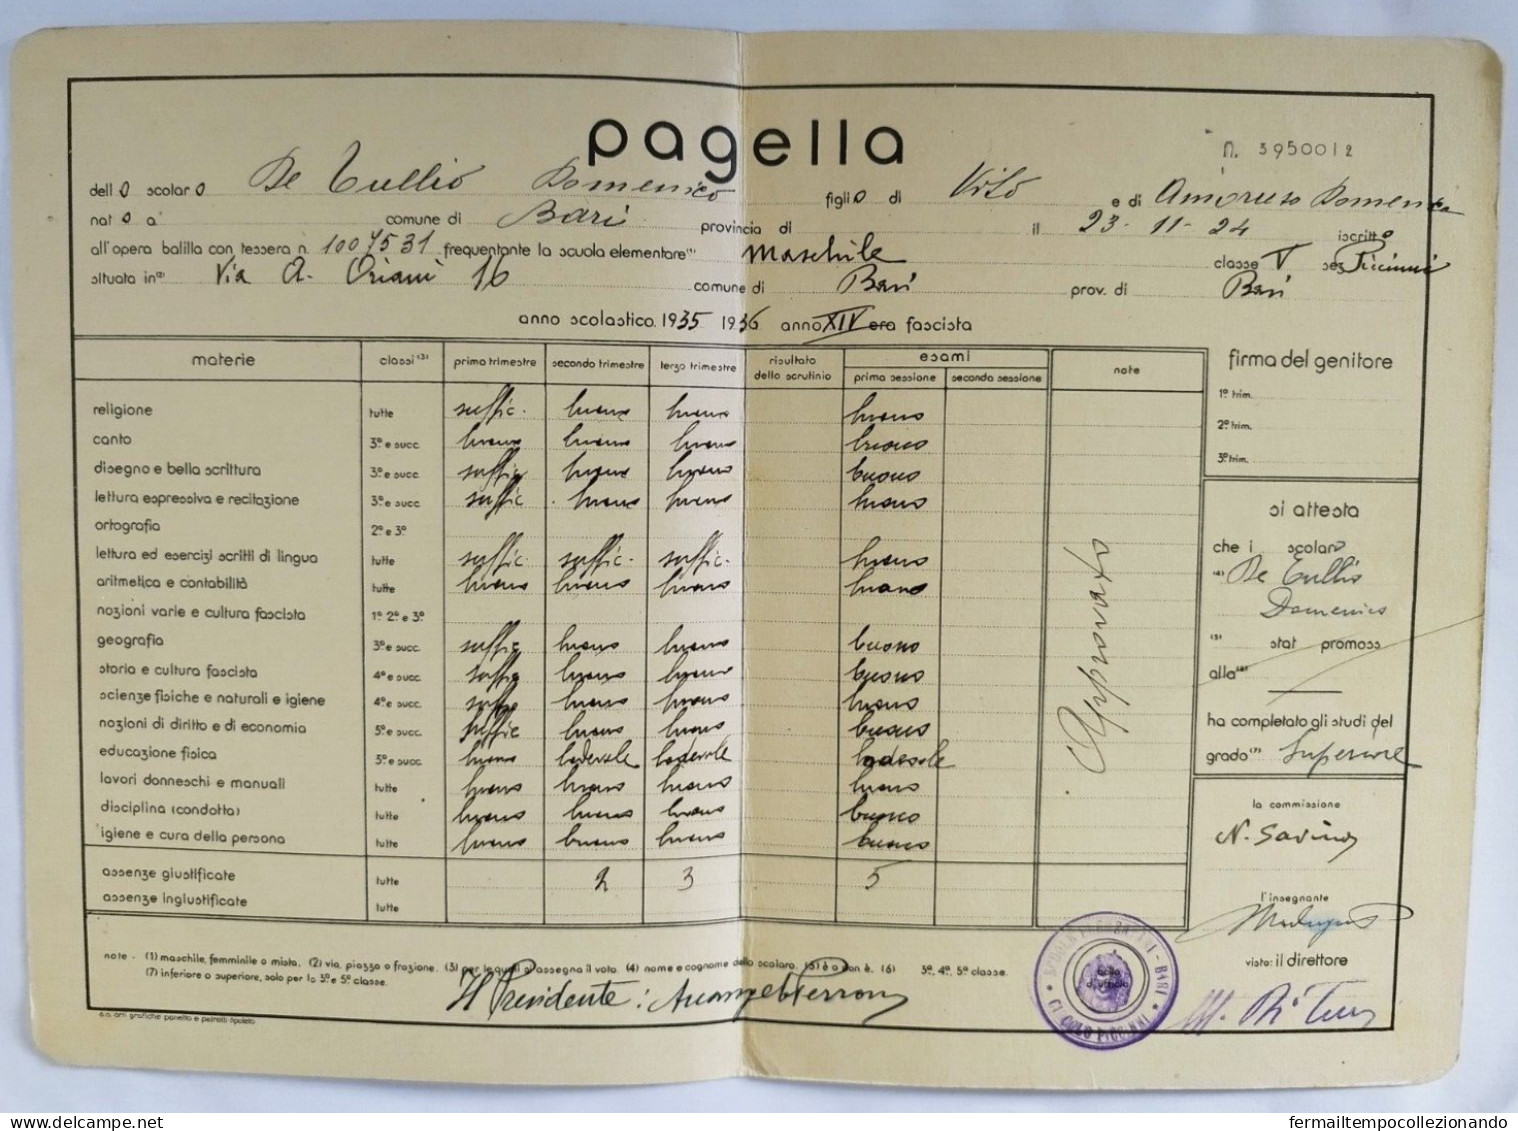 Bp163 Pagella Fascista Regno D'italia Opera Balilla Bari 1936 - Diplomi E Pagelle